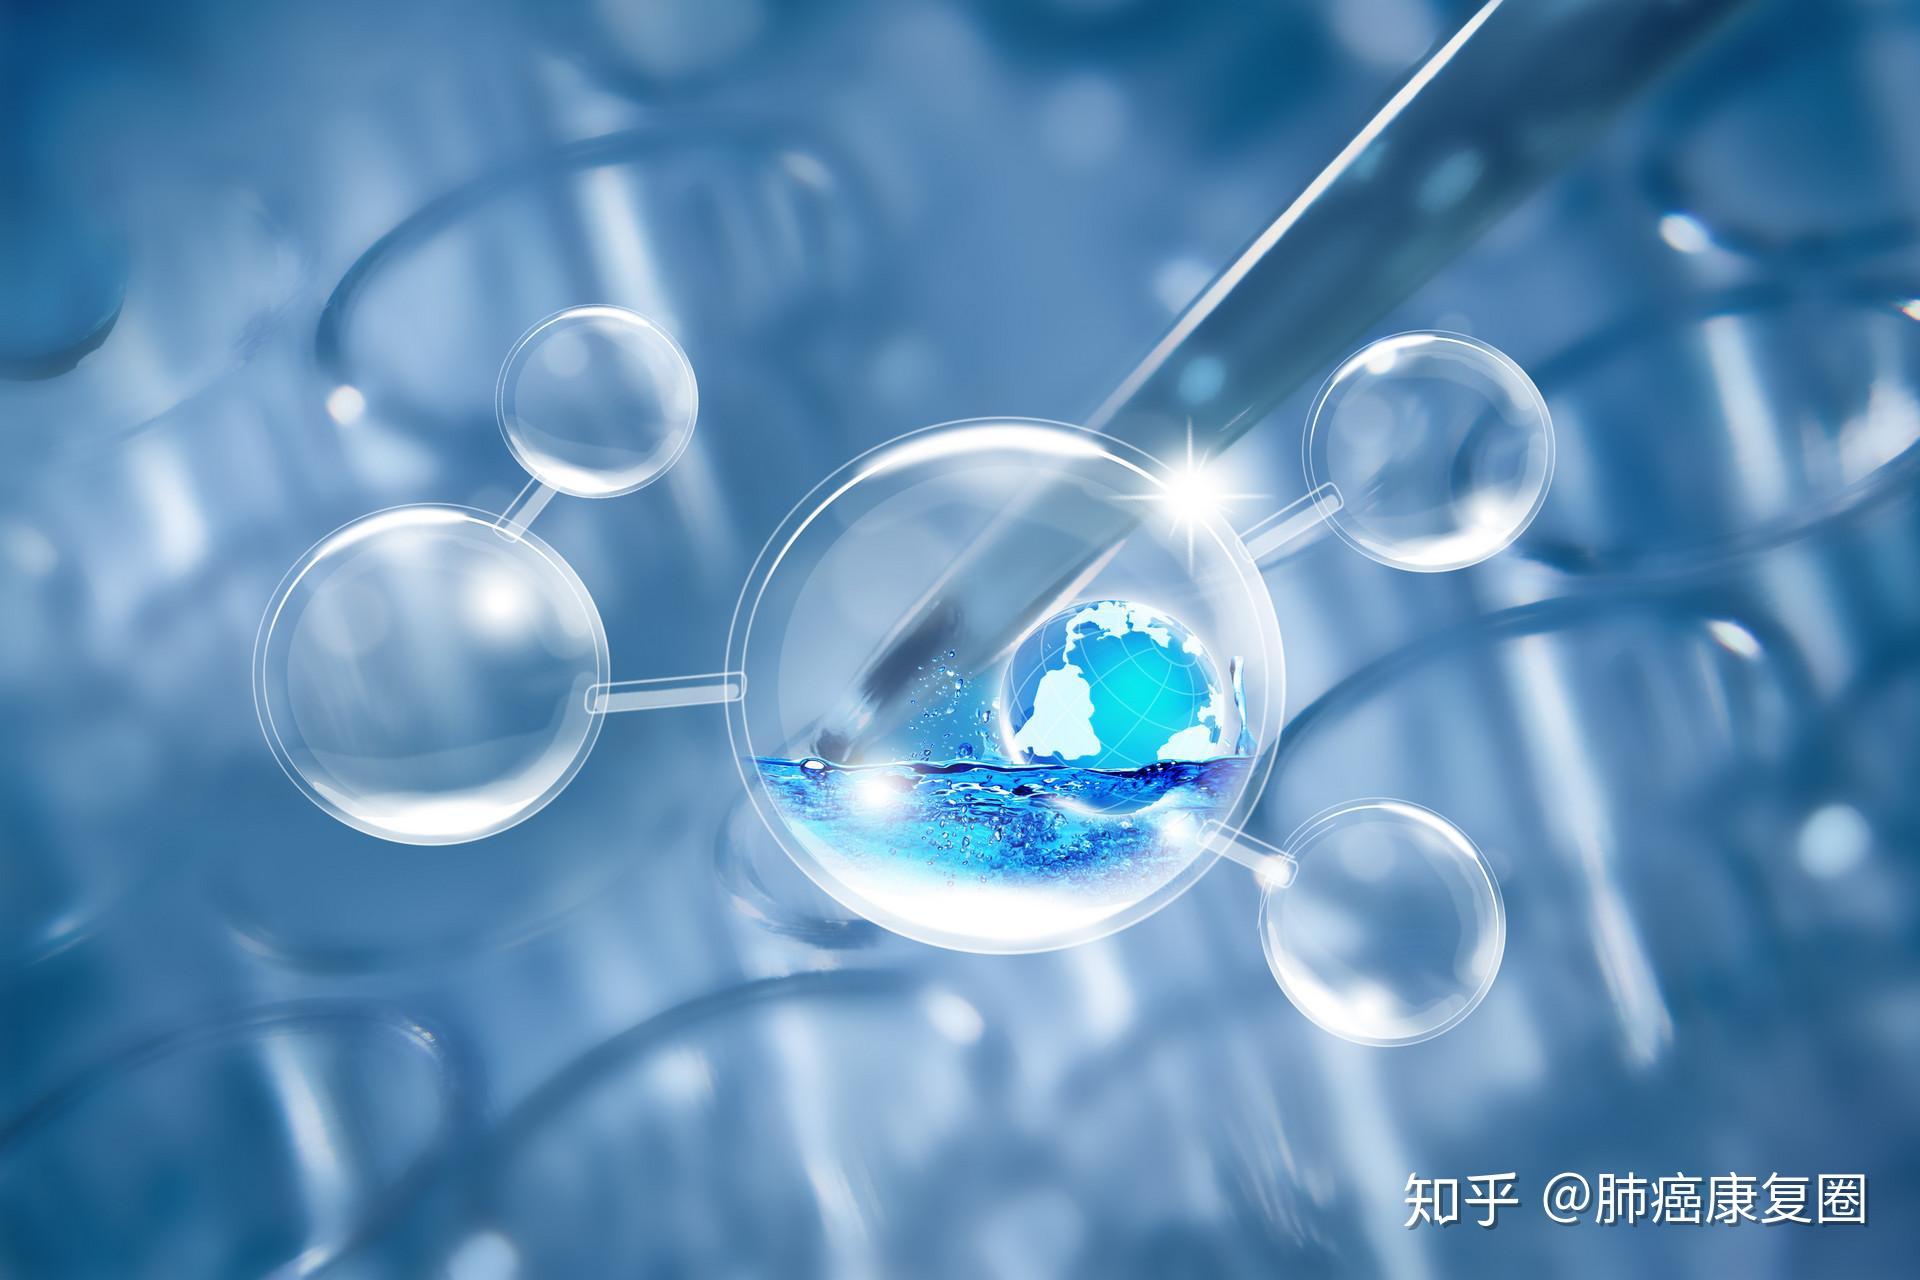 西南大学许志刚/武汉大学孙志军《Chem. Soc. Rev.》综述：生物工程化纳米凝胶用于肿瘤免疫治疗_中国聚合物网科教新闻